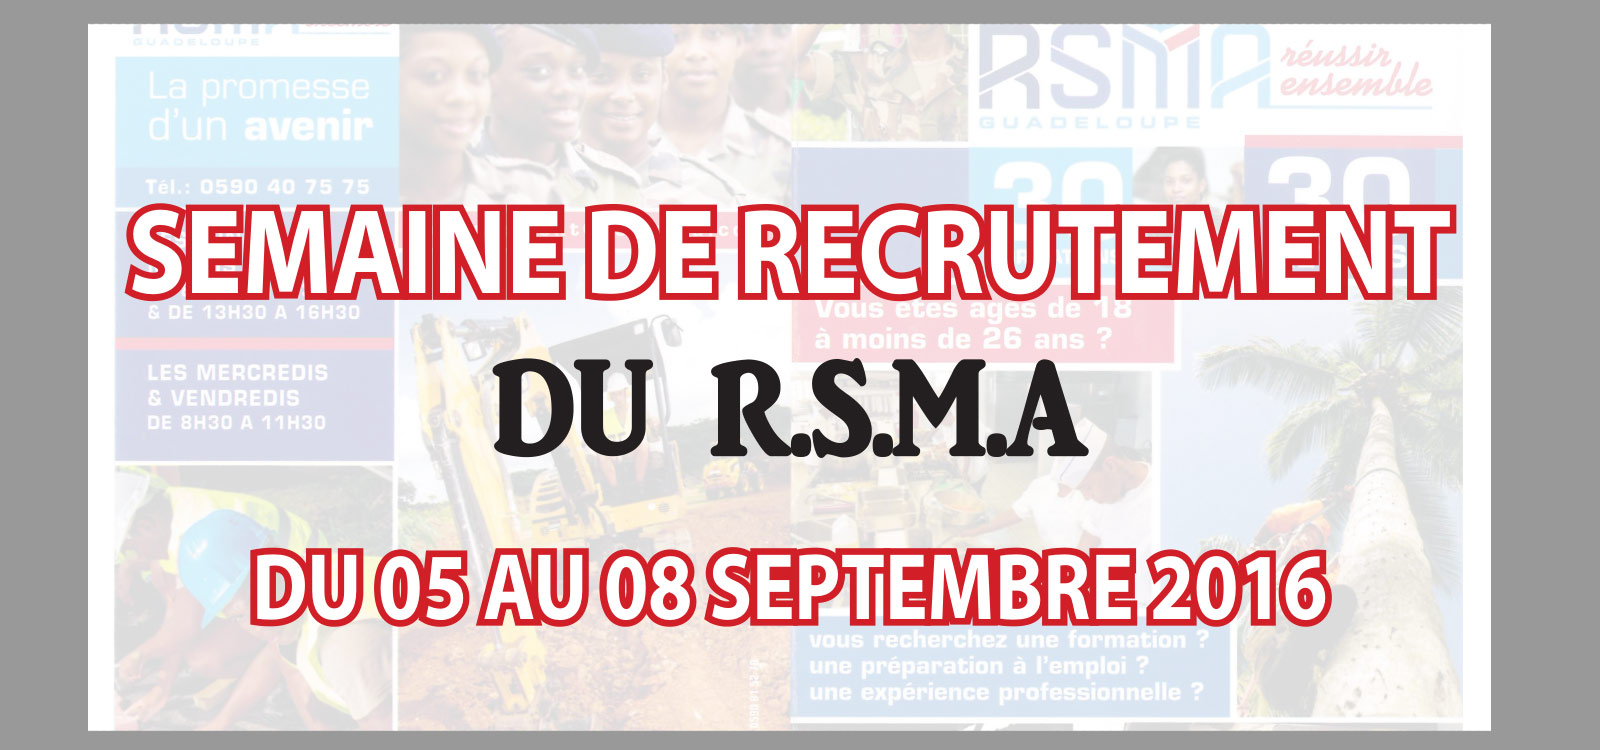 Le RSMA recrute  Saint-Martin, du 05 au 08 septembre 2016